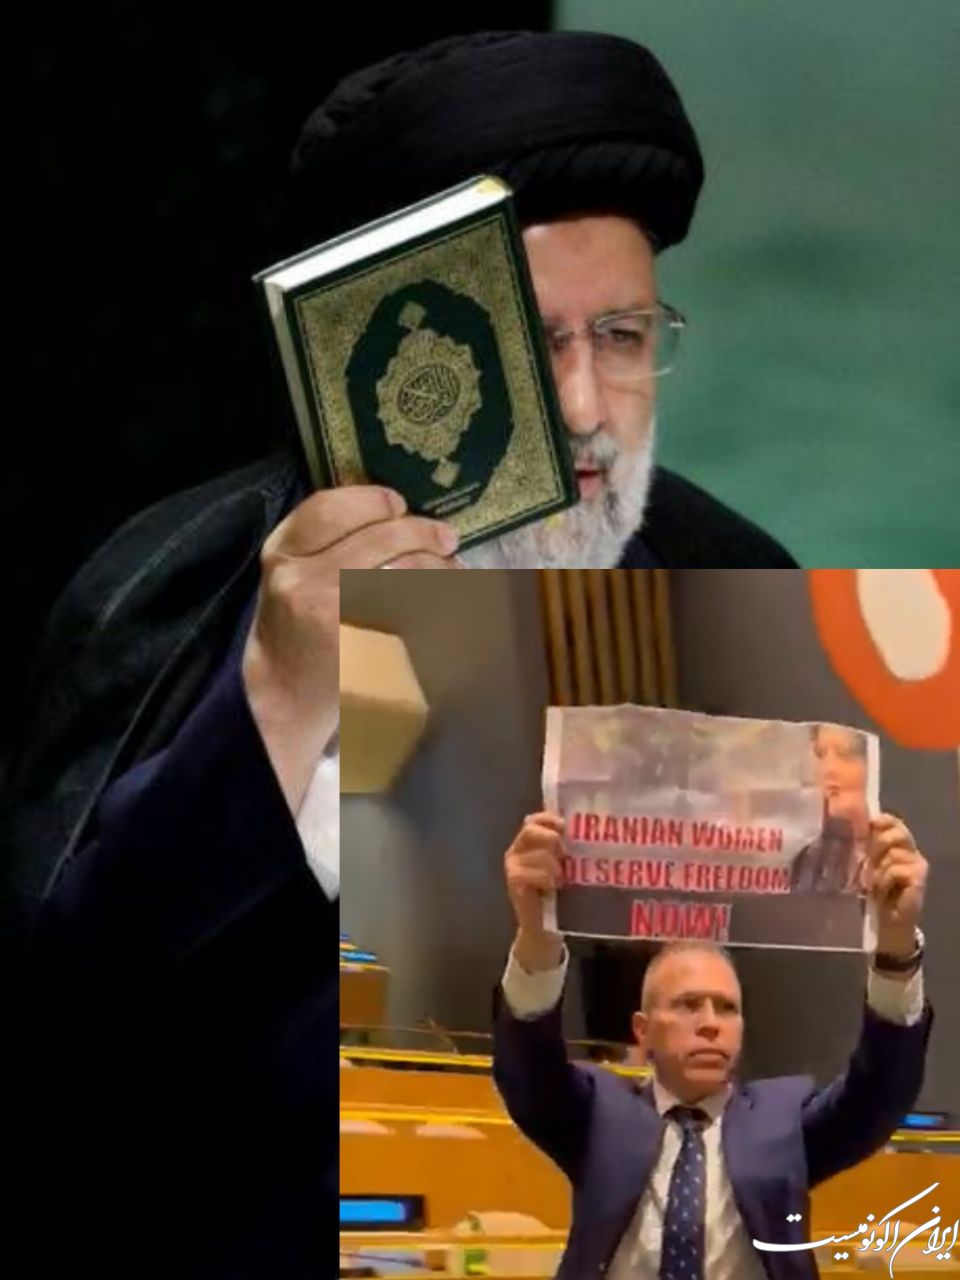 قرآن در دستان نماینده ایران و عکس مهسا در دستان نماینده صهیونیستی